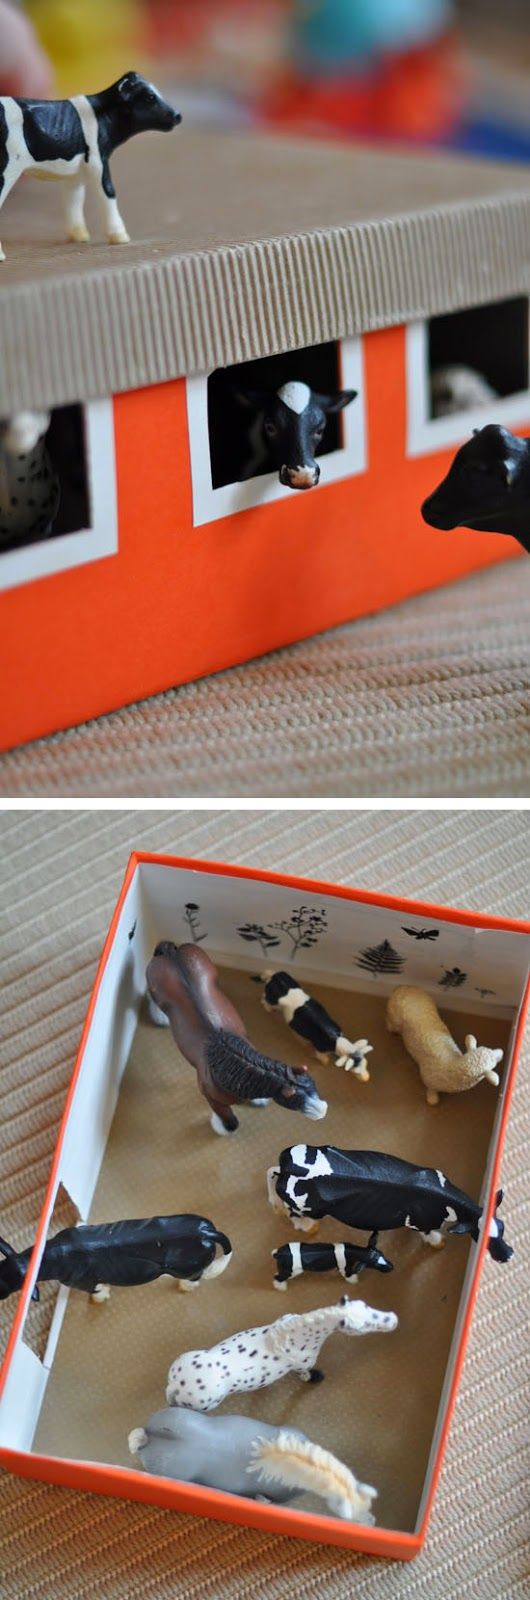 鞋盒废物利用 手工 图片来自pinterest